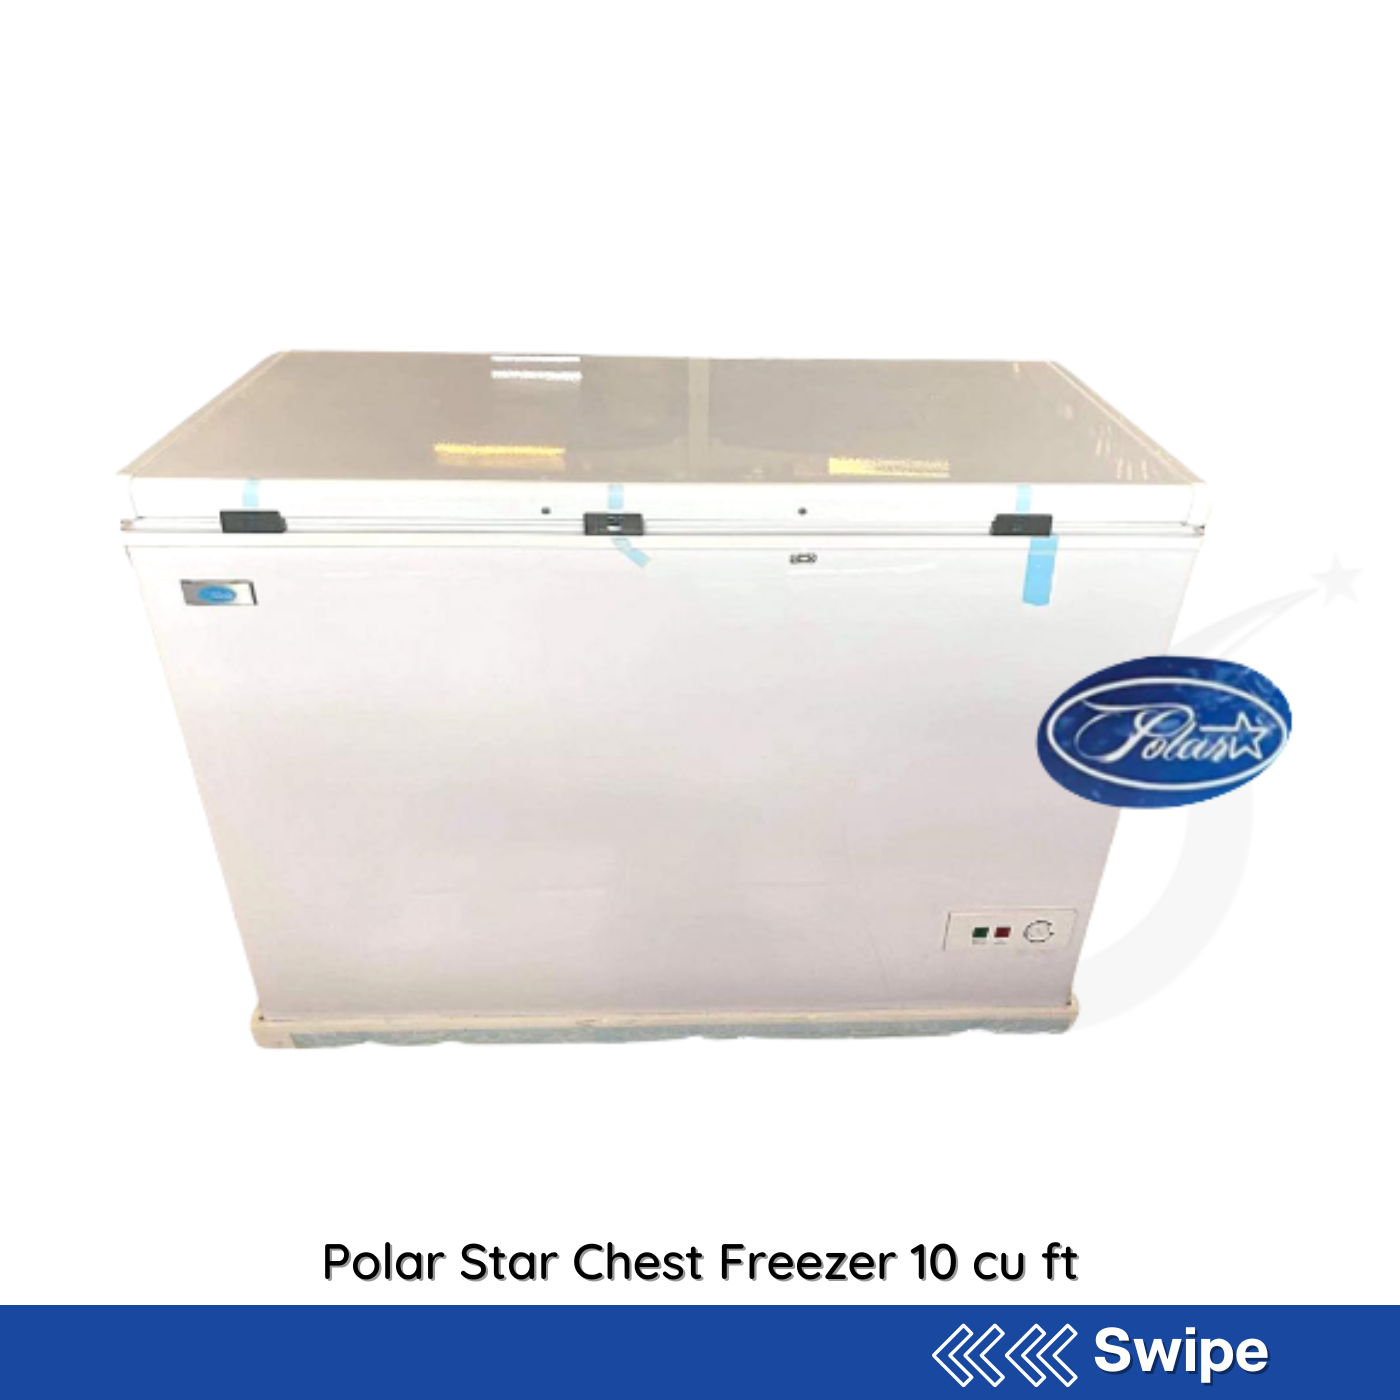 Polar Star Chest Freezer 10 cu ft